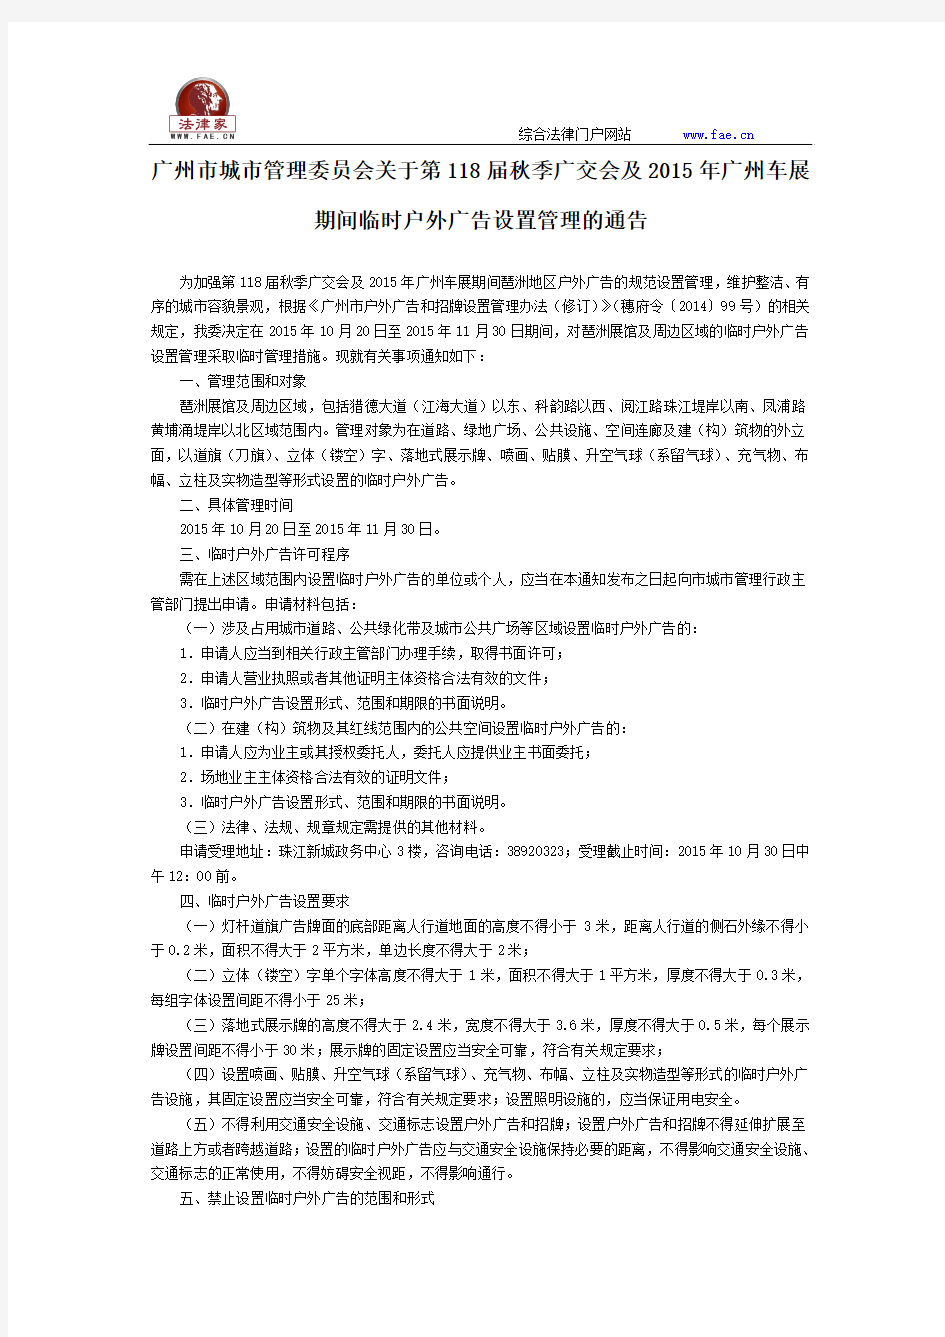 广州市城市管理委员会关于第118届秋季广交会及2015年广州车展期间临时户外广告设置管理的通告-地方规范性文